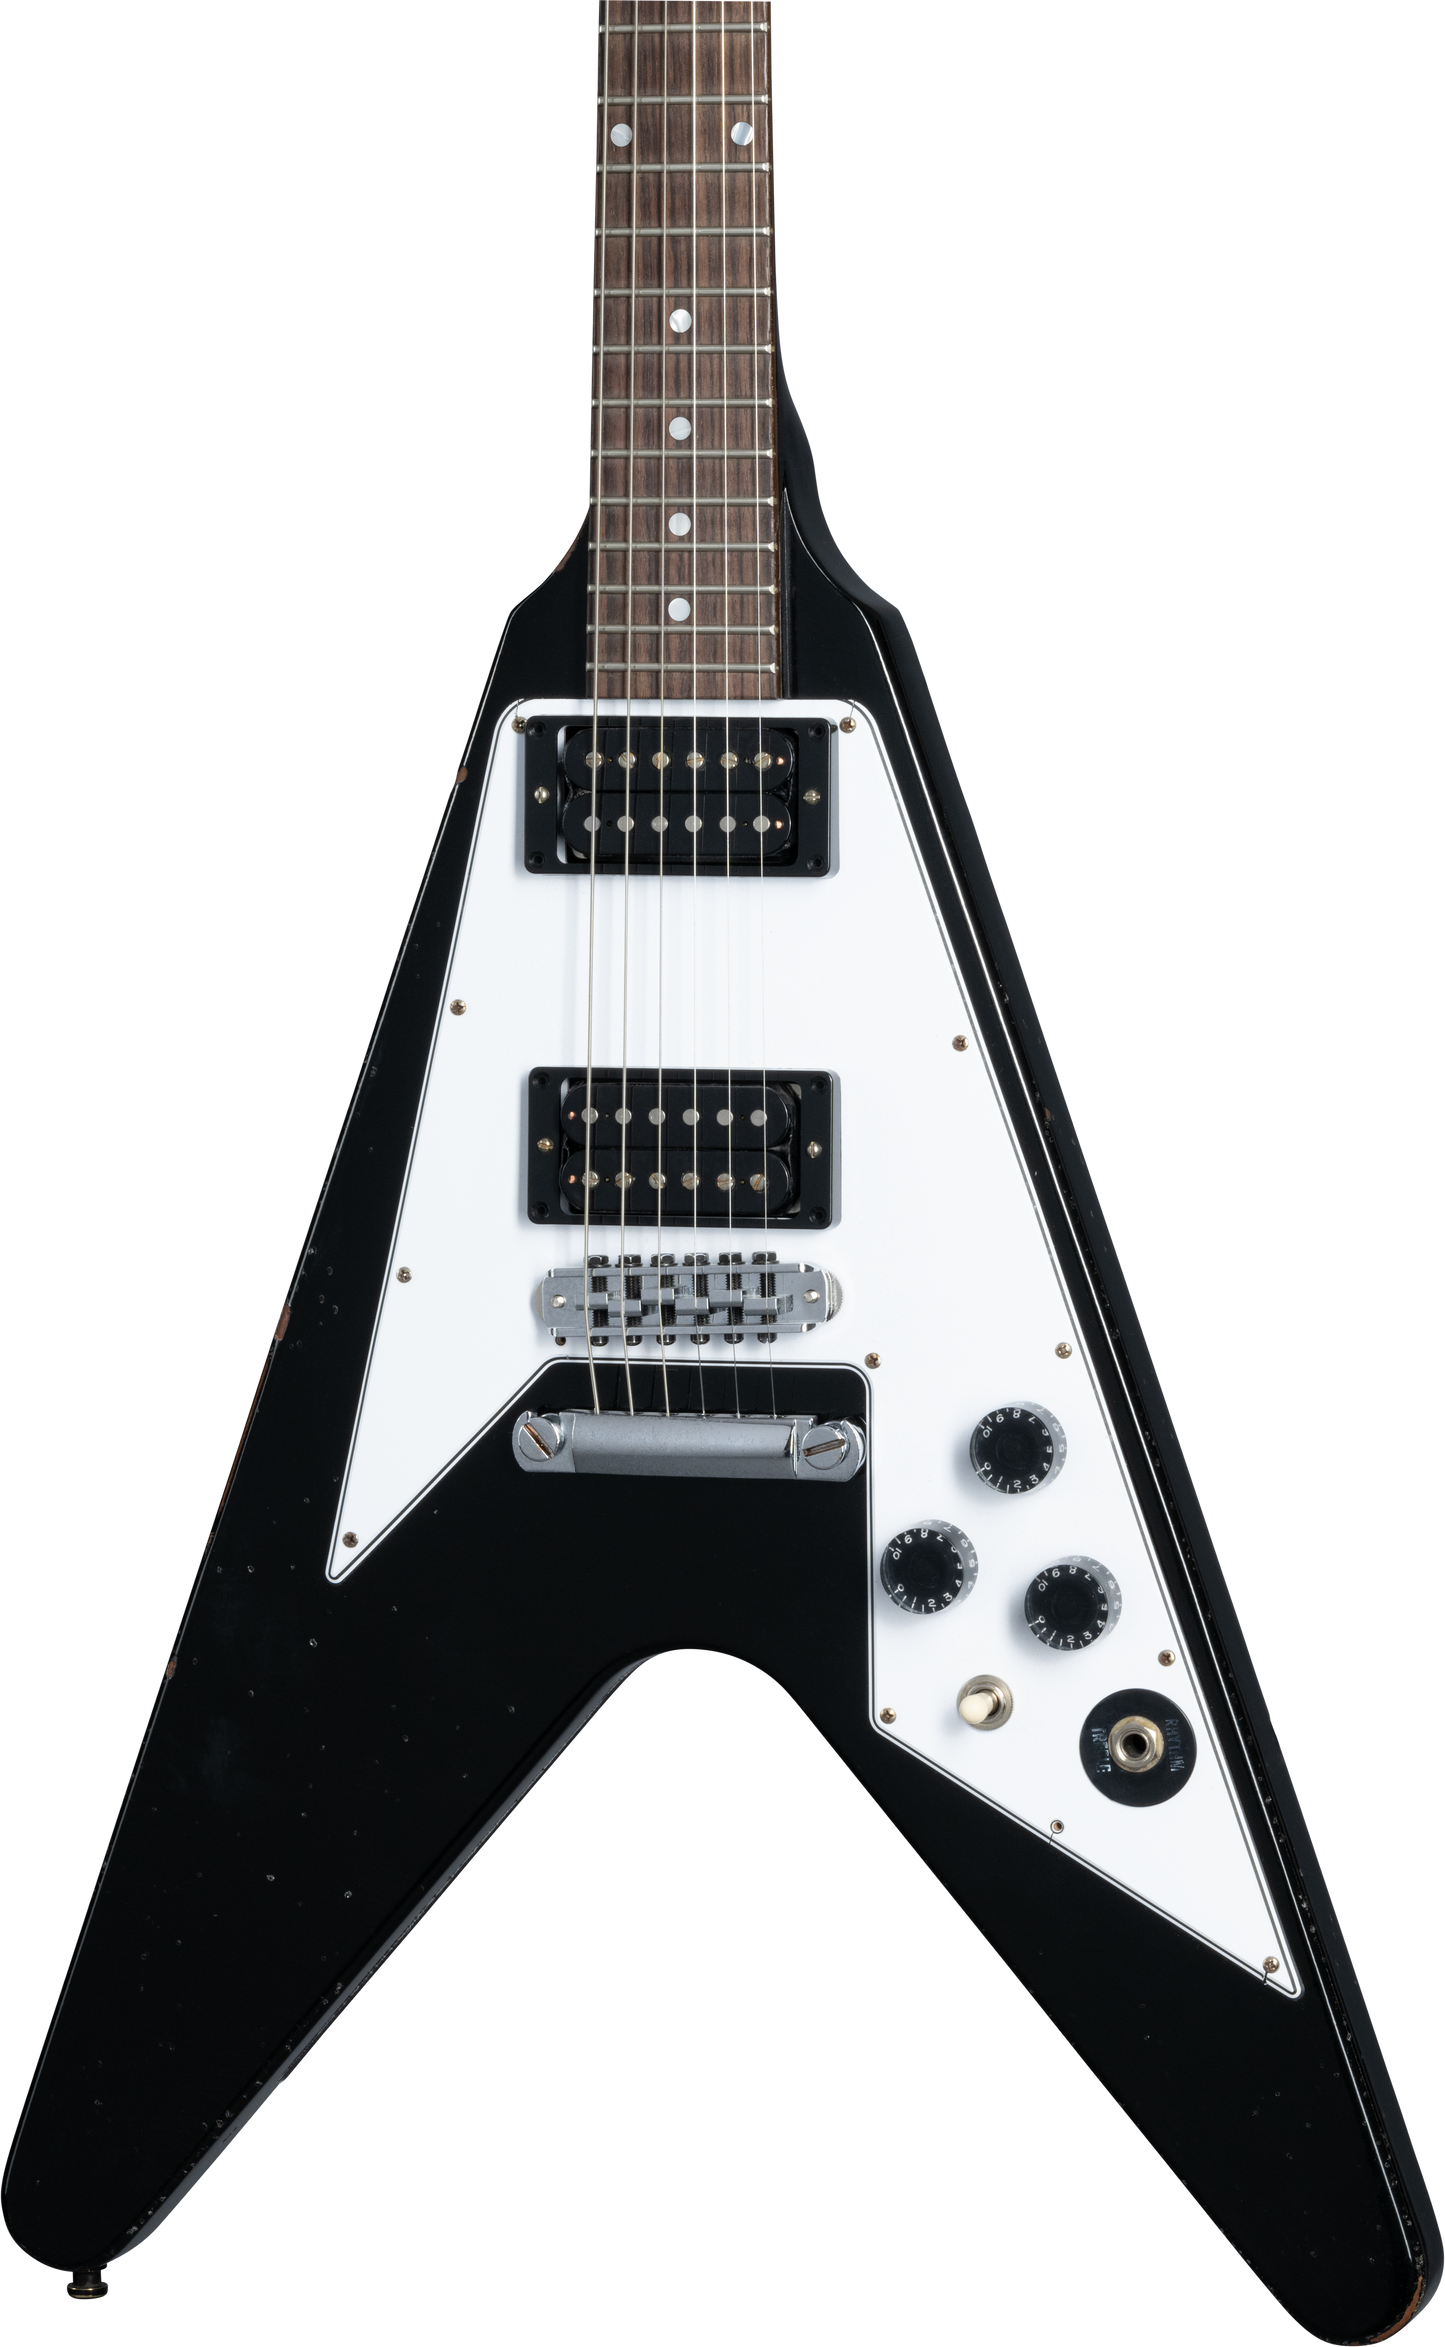 Gibson Custom Shop Kirk Hammett 1979 Flying V w/case